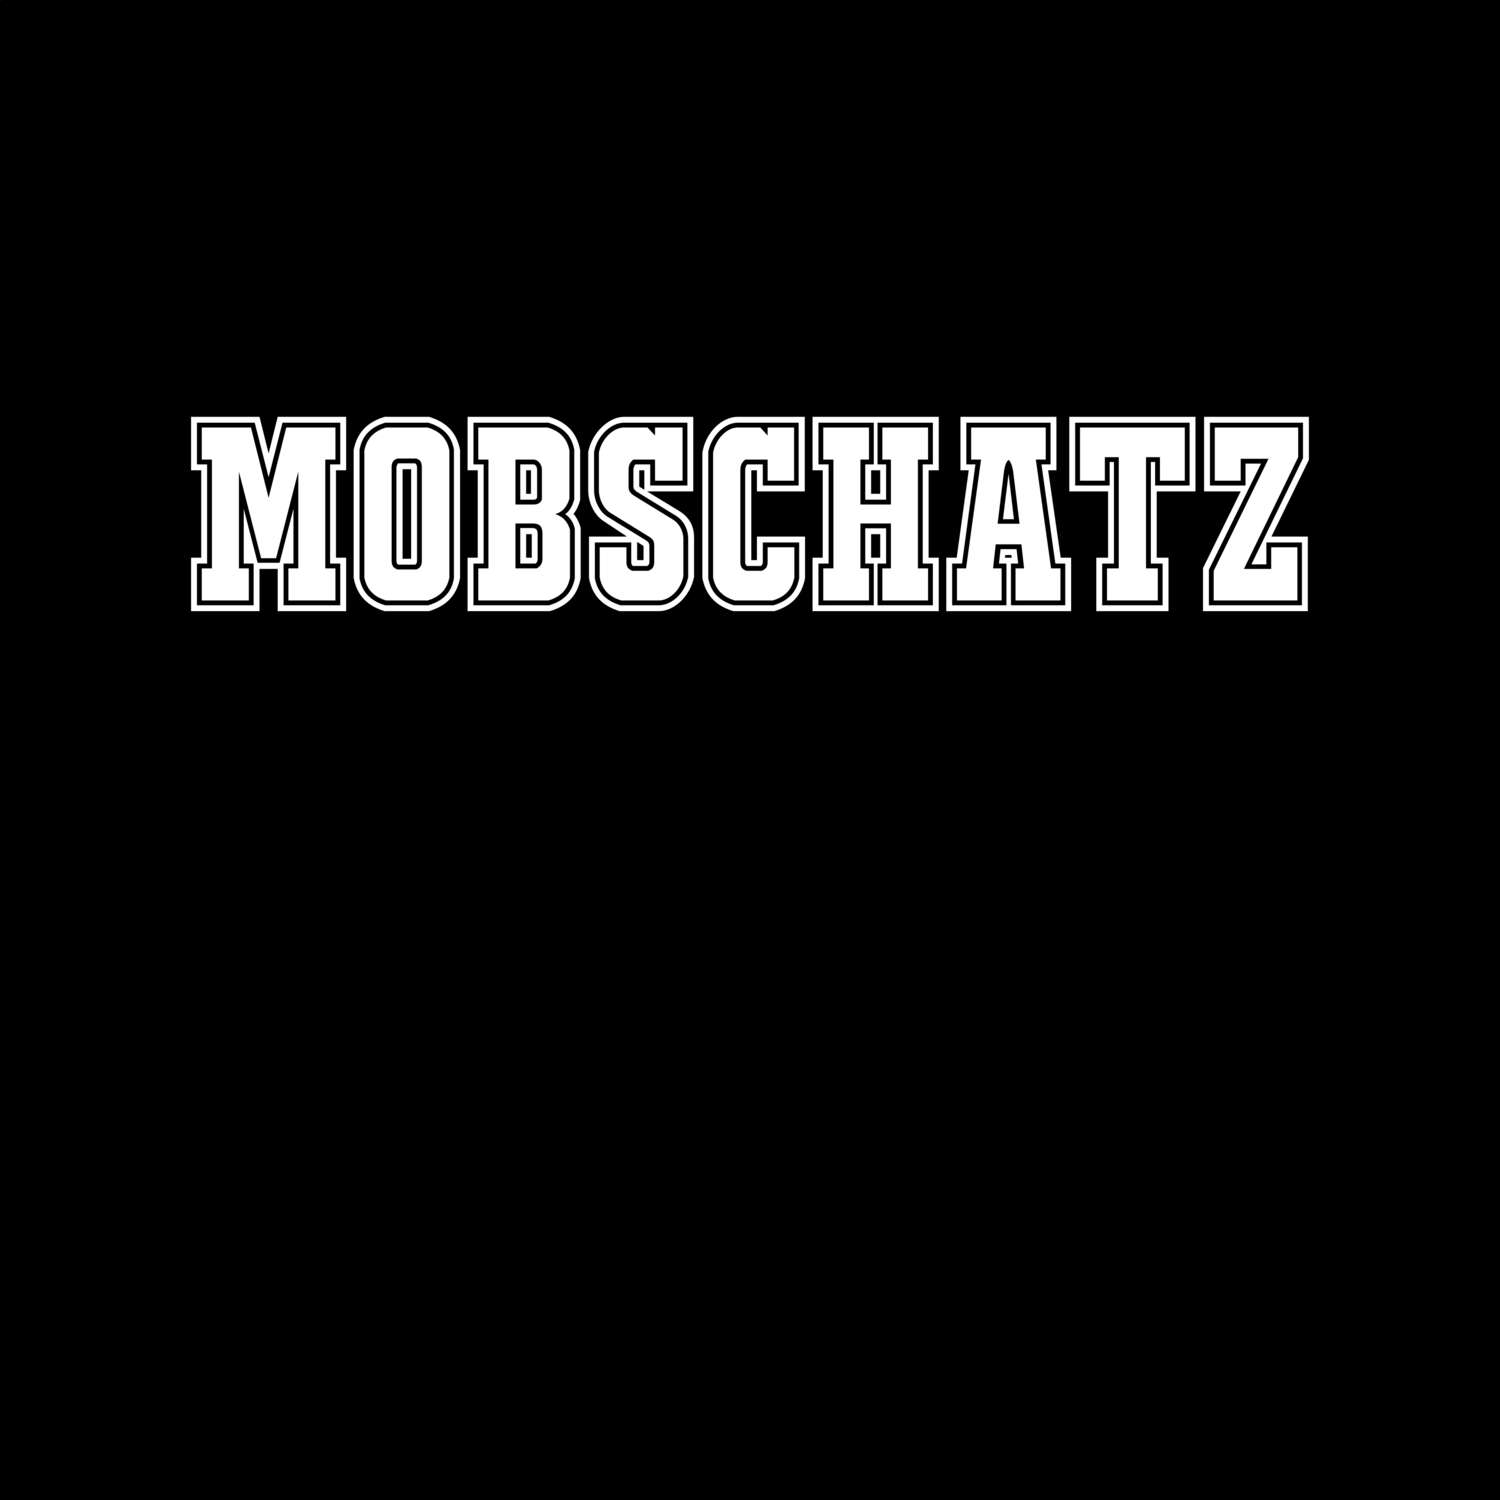 Mobschatz T-Shirt »Classic«